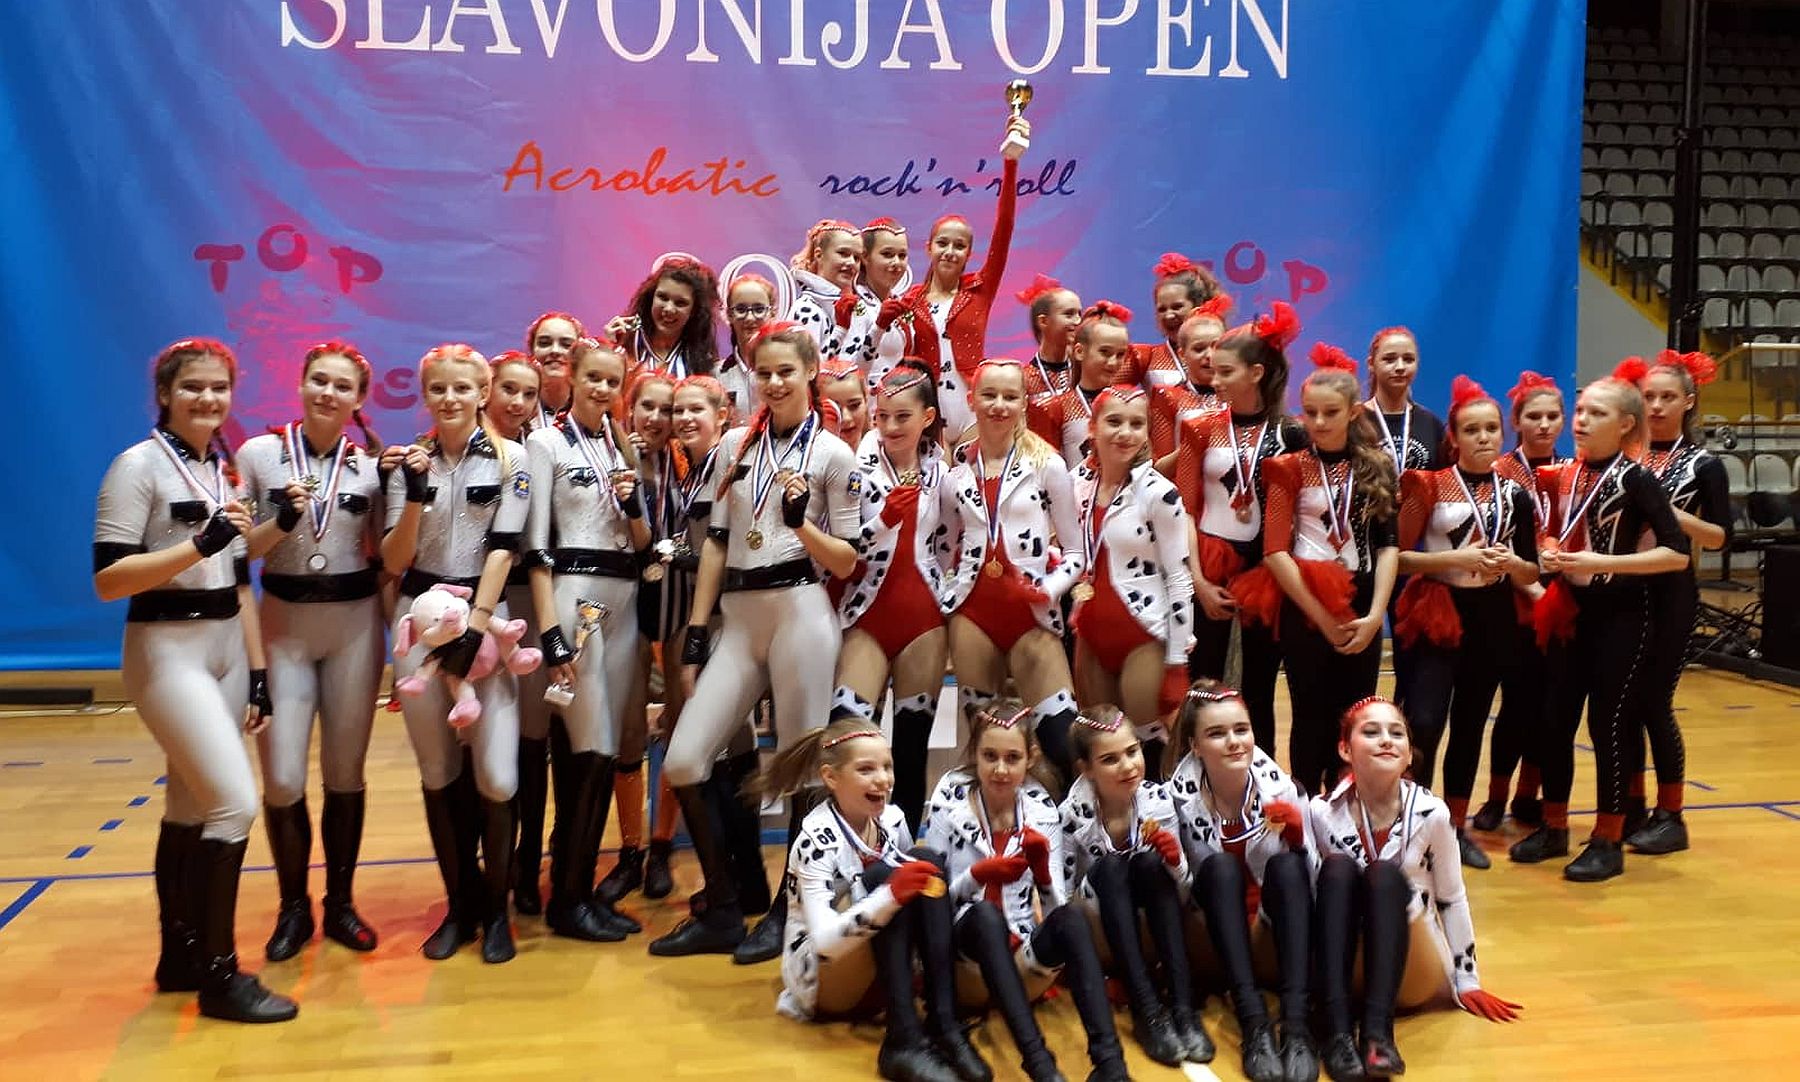 Fehérvári érmek a Slavonija Open akrobatikus rock and roll táncversenyen